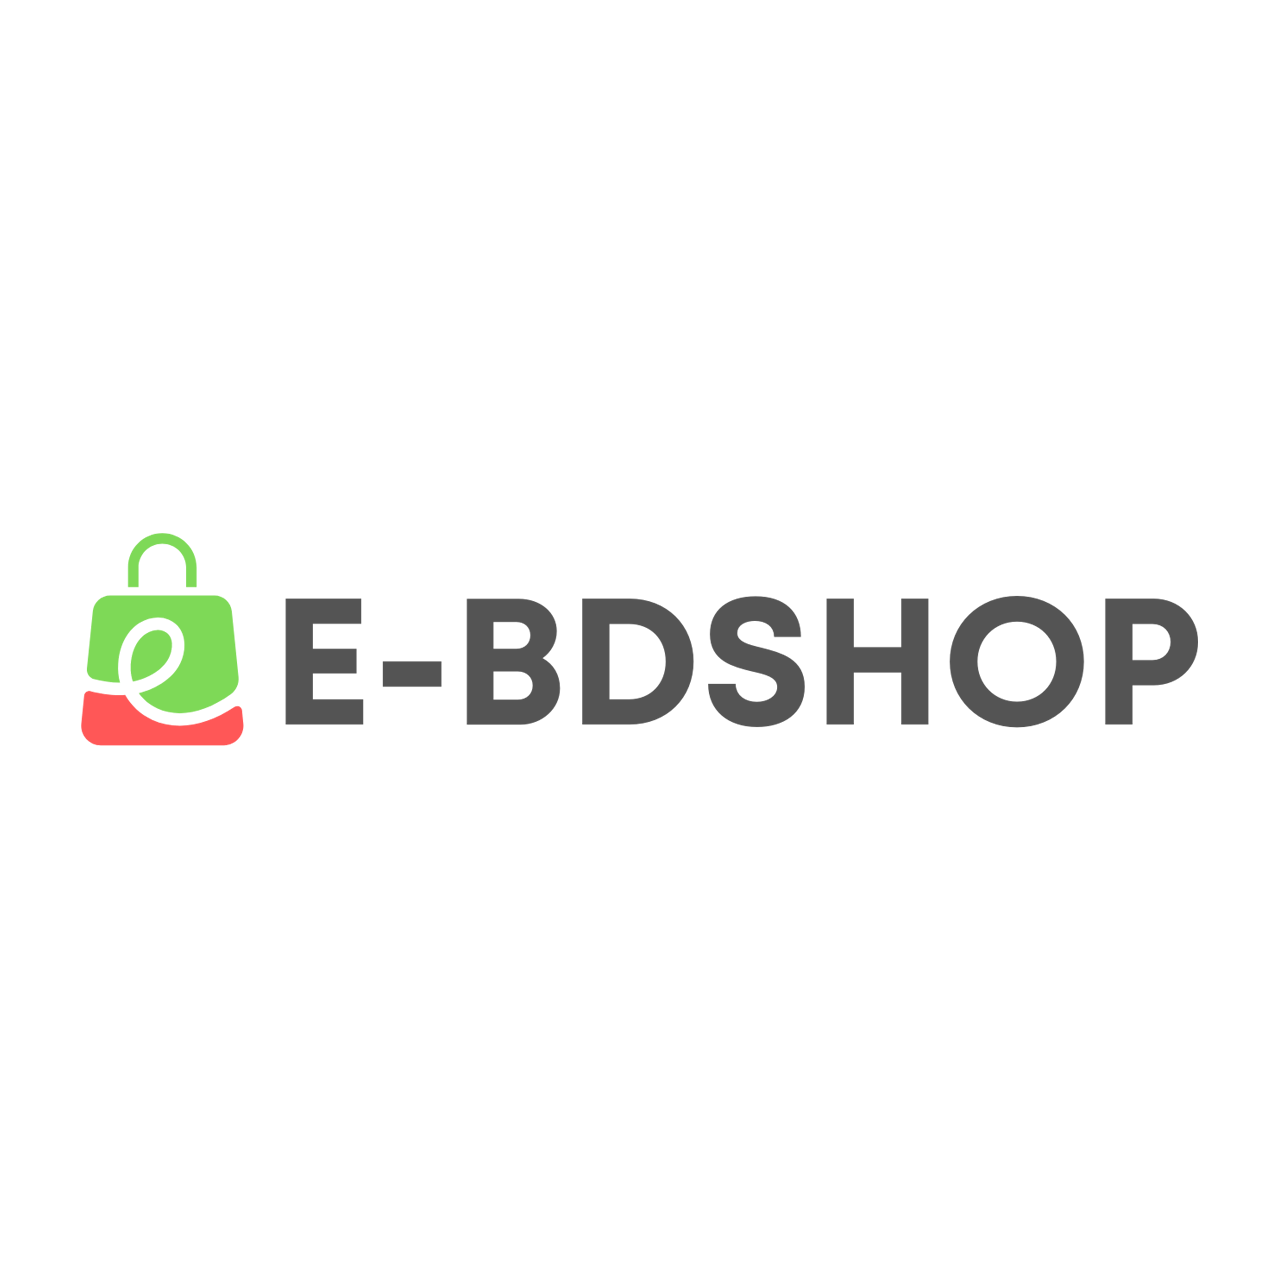 EBDSHOP